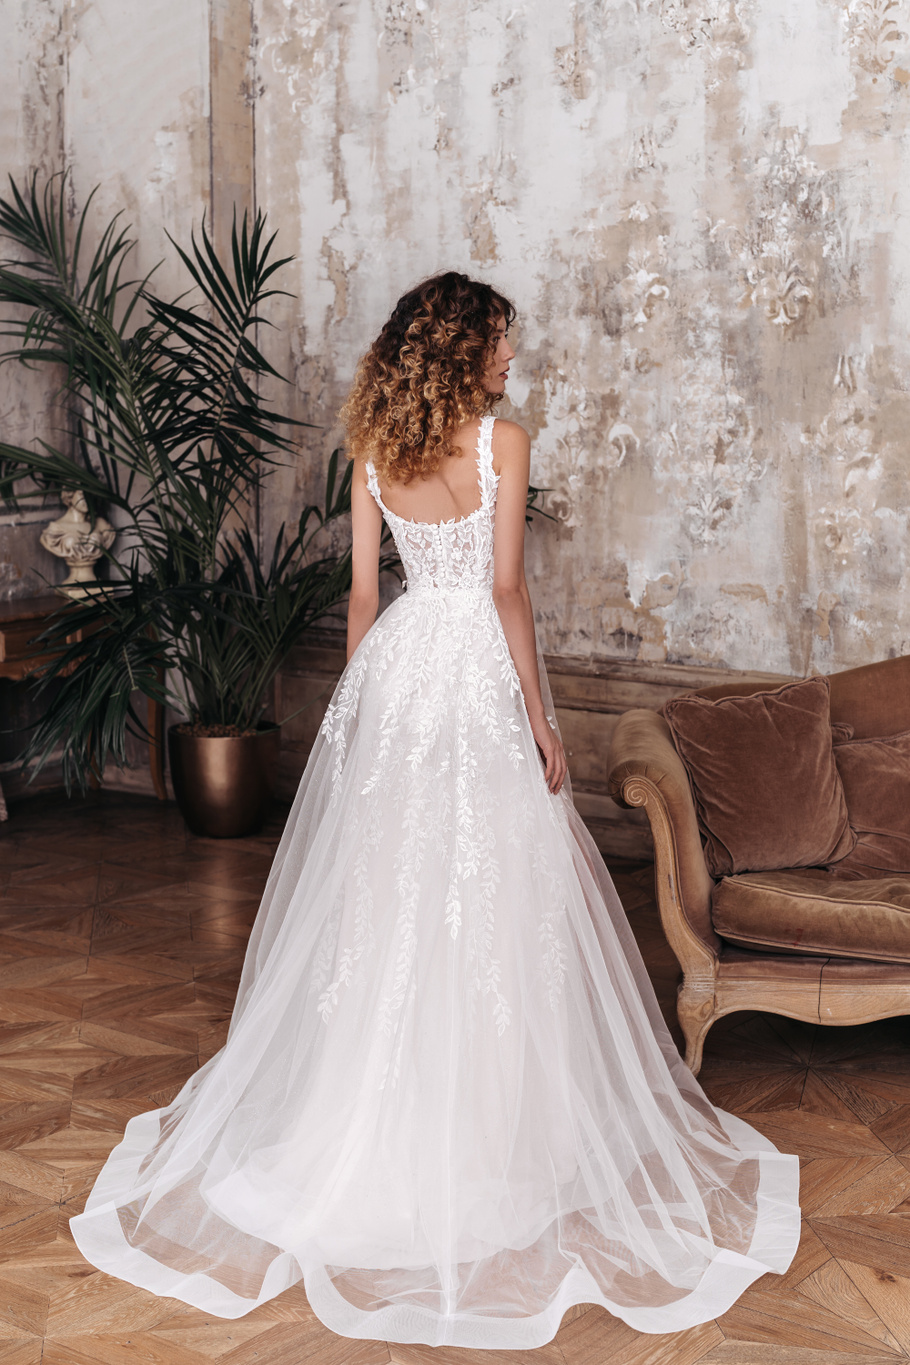 Купить свадебное платье Арт. 22018 Бланни из коллекции 2023 года в салоне «Мэри Трюфель»